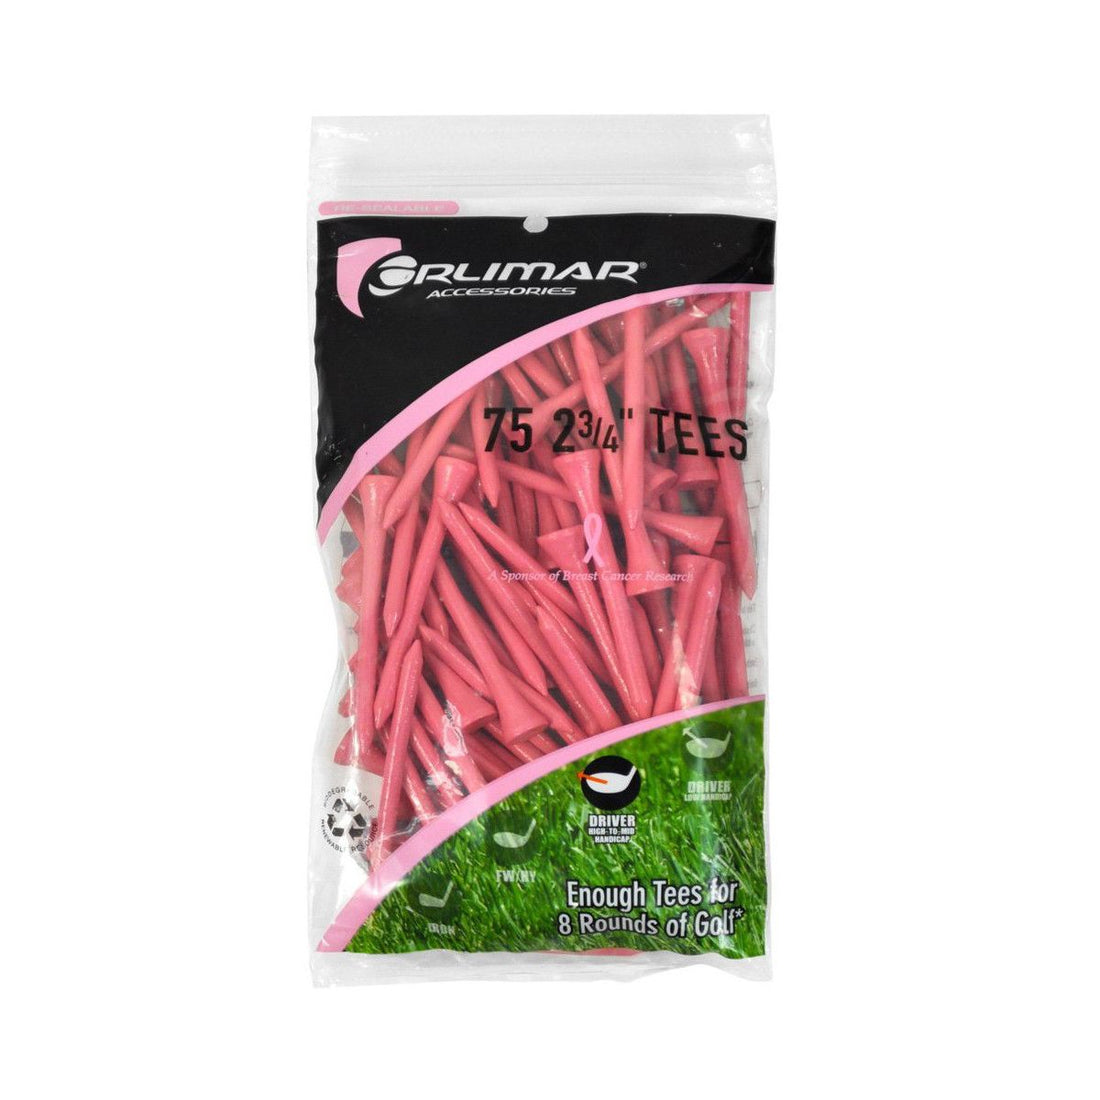 75 pack 2 3/4" Orlimar Pink Golf Tees in resealable packaging